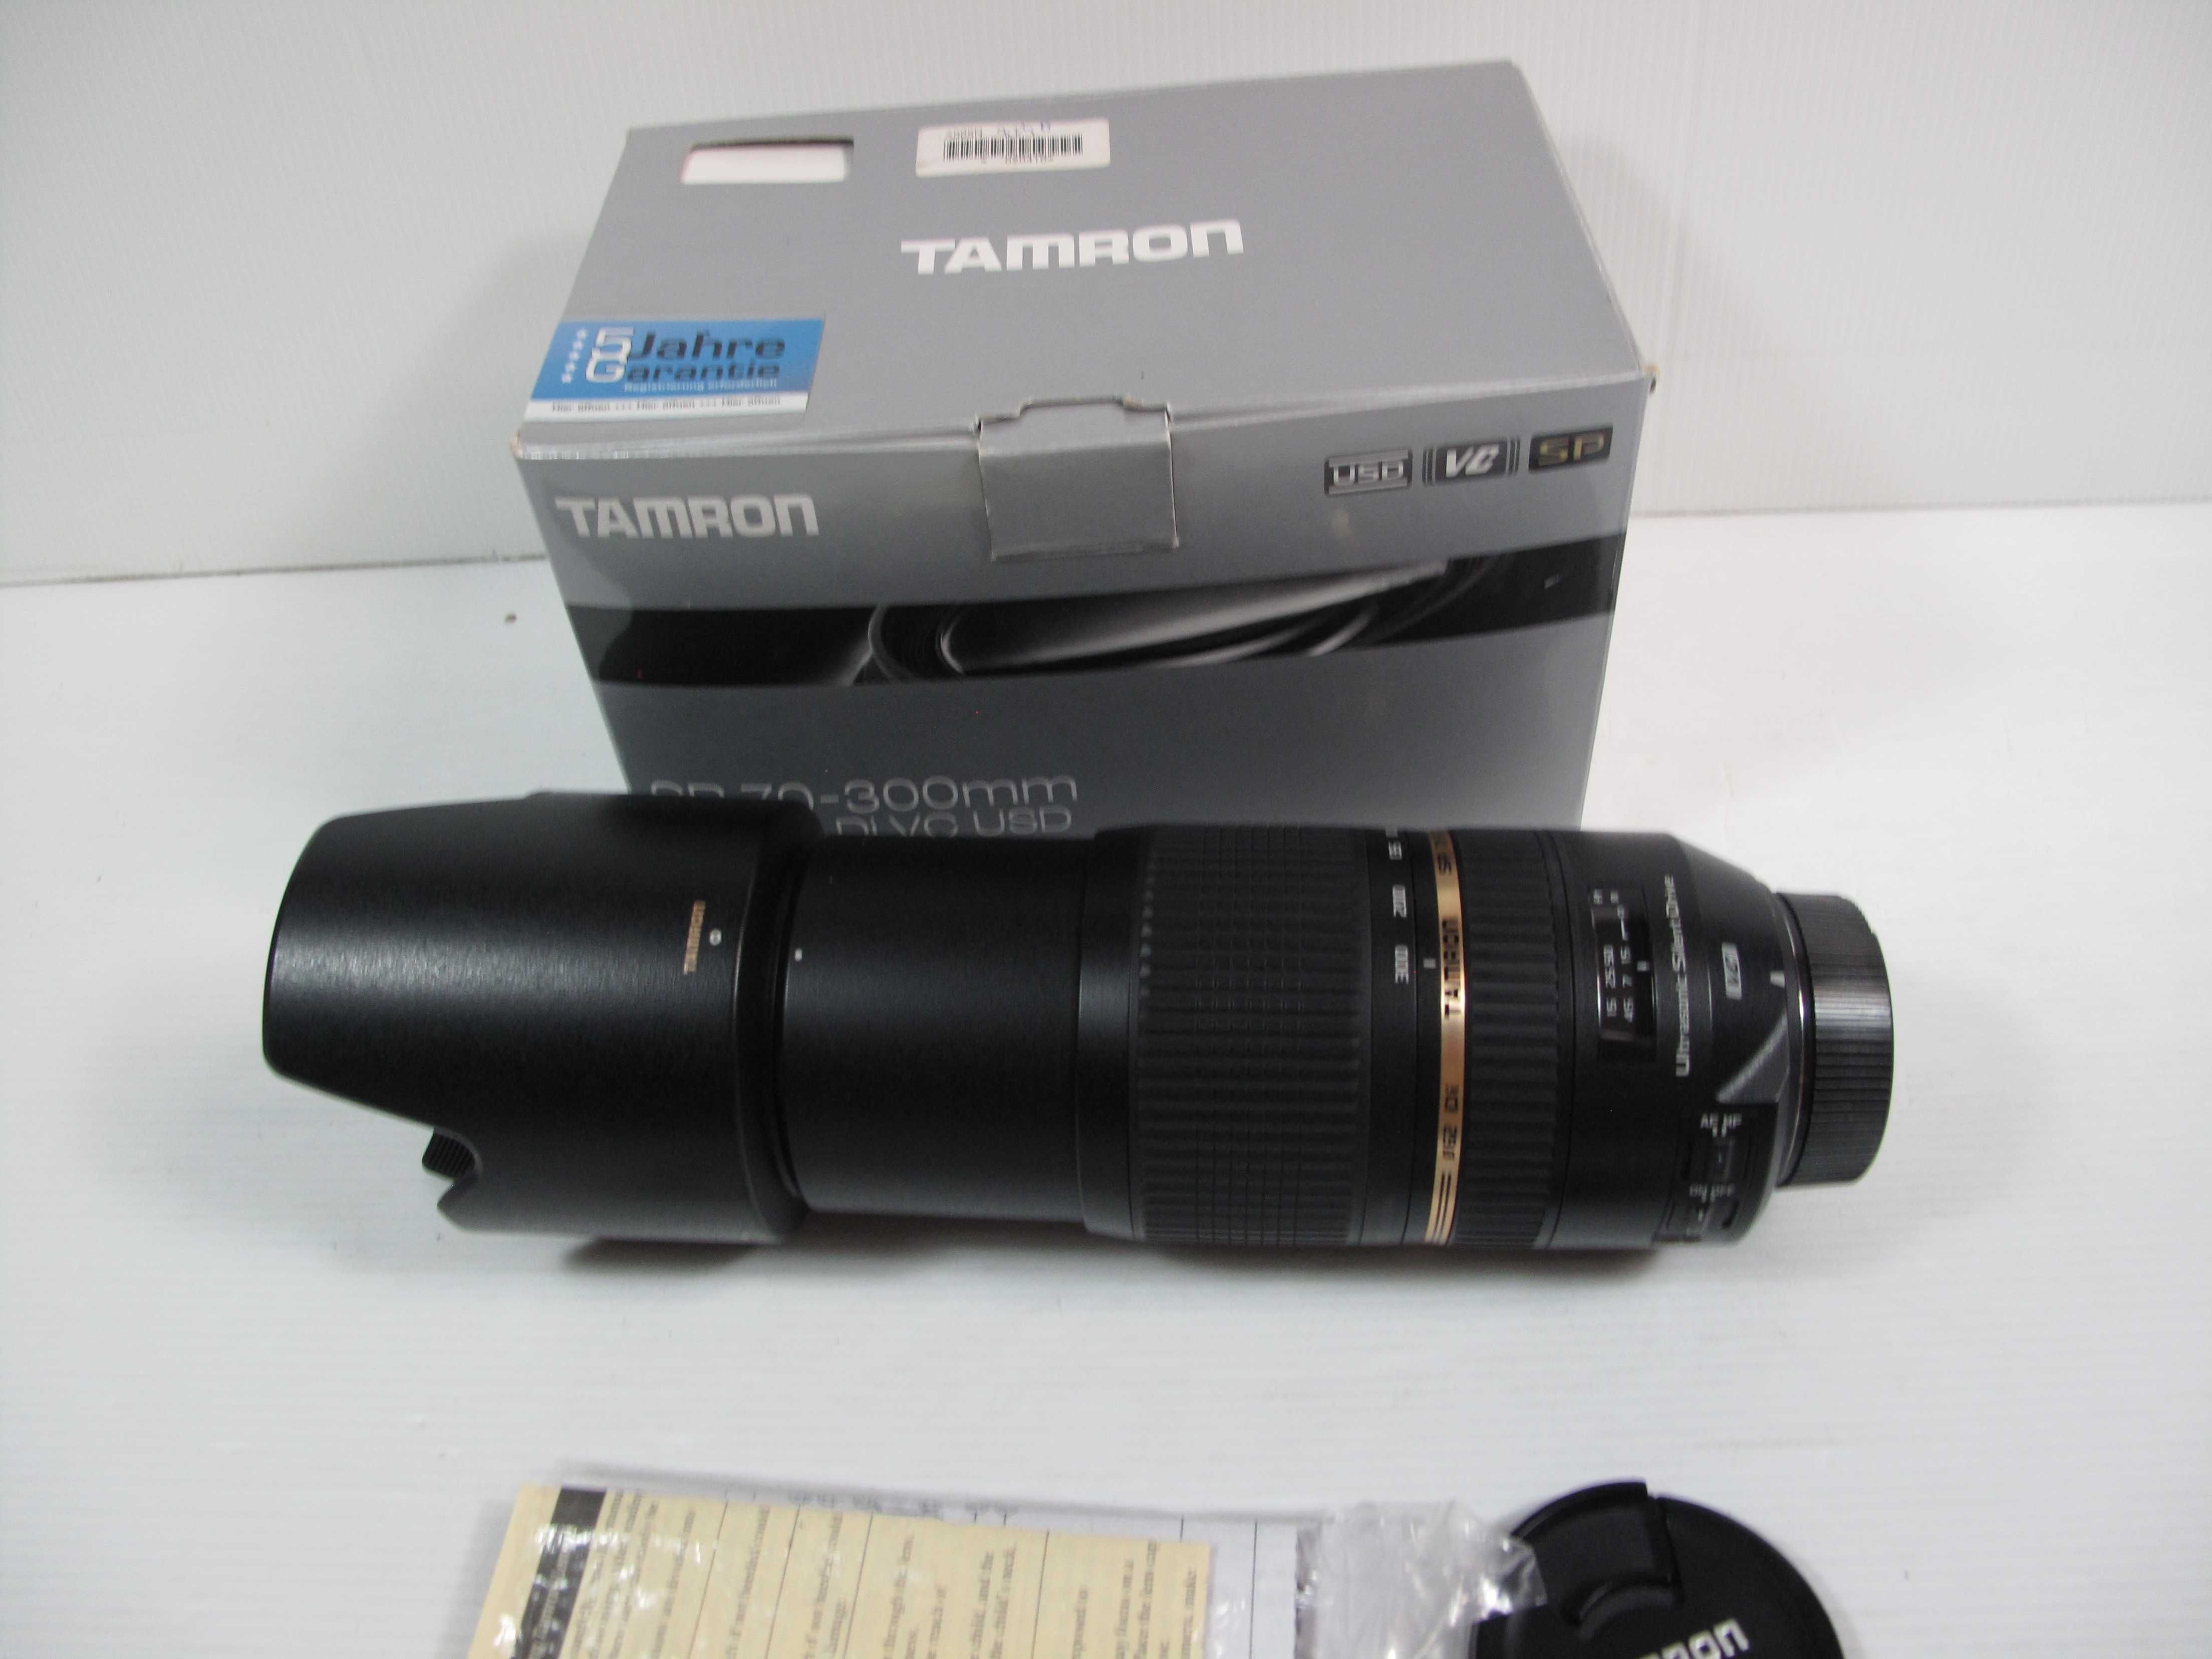 Tamron / Nikon 70-300 VC (Estabilizador) tudo na caixa original